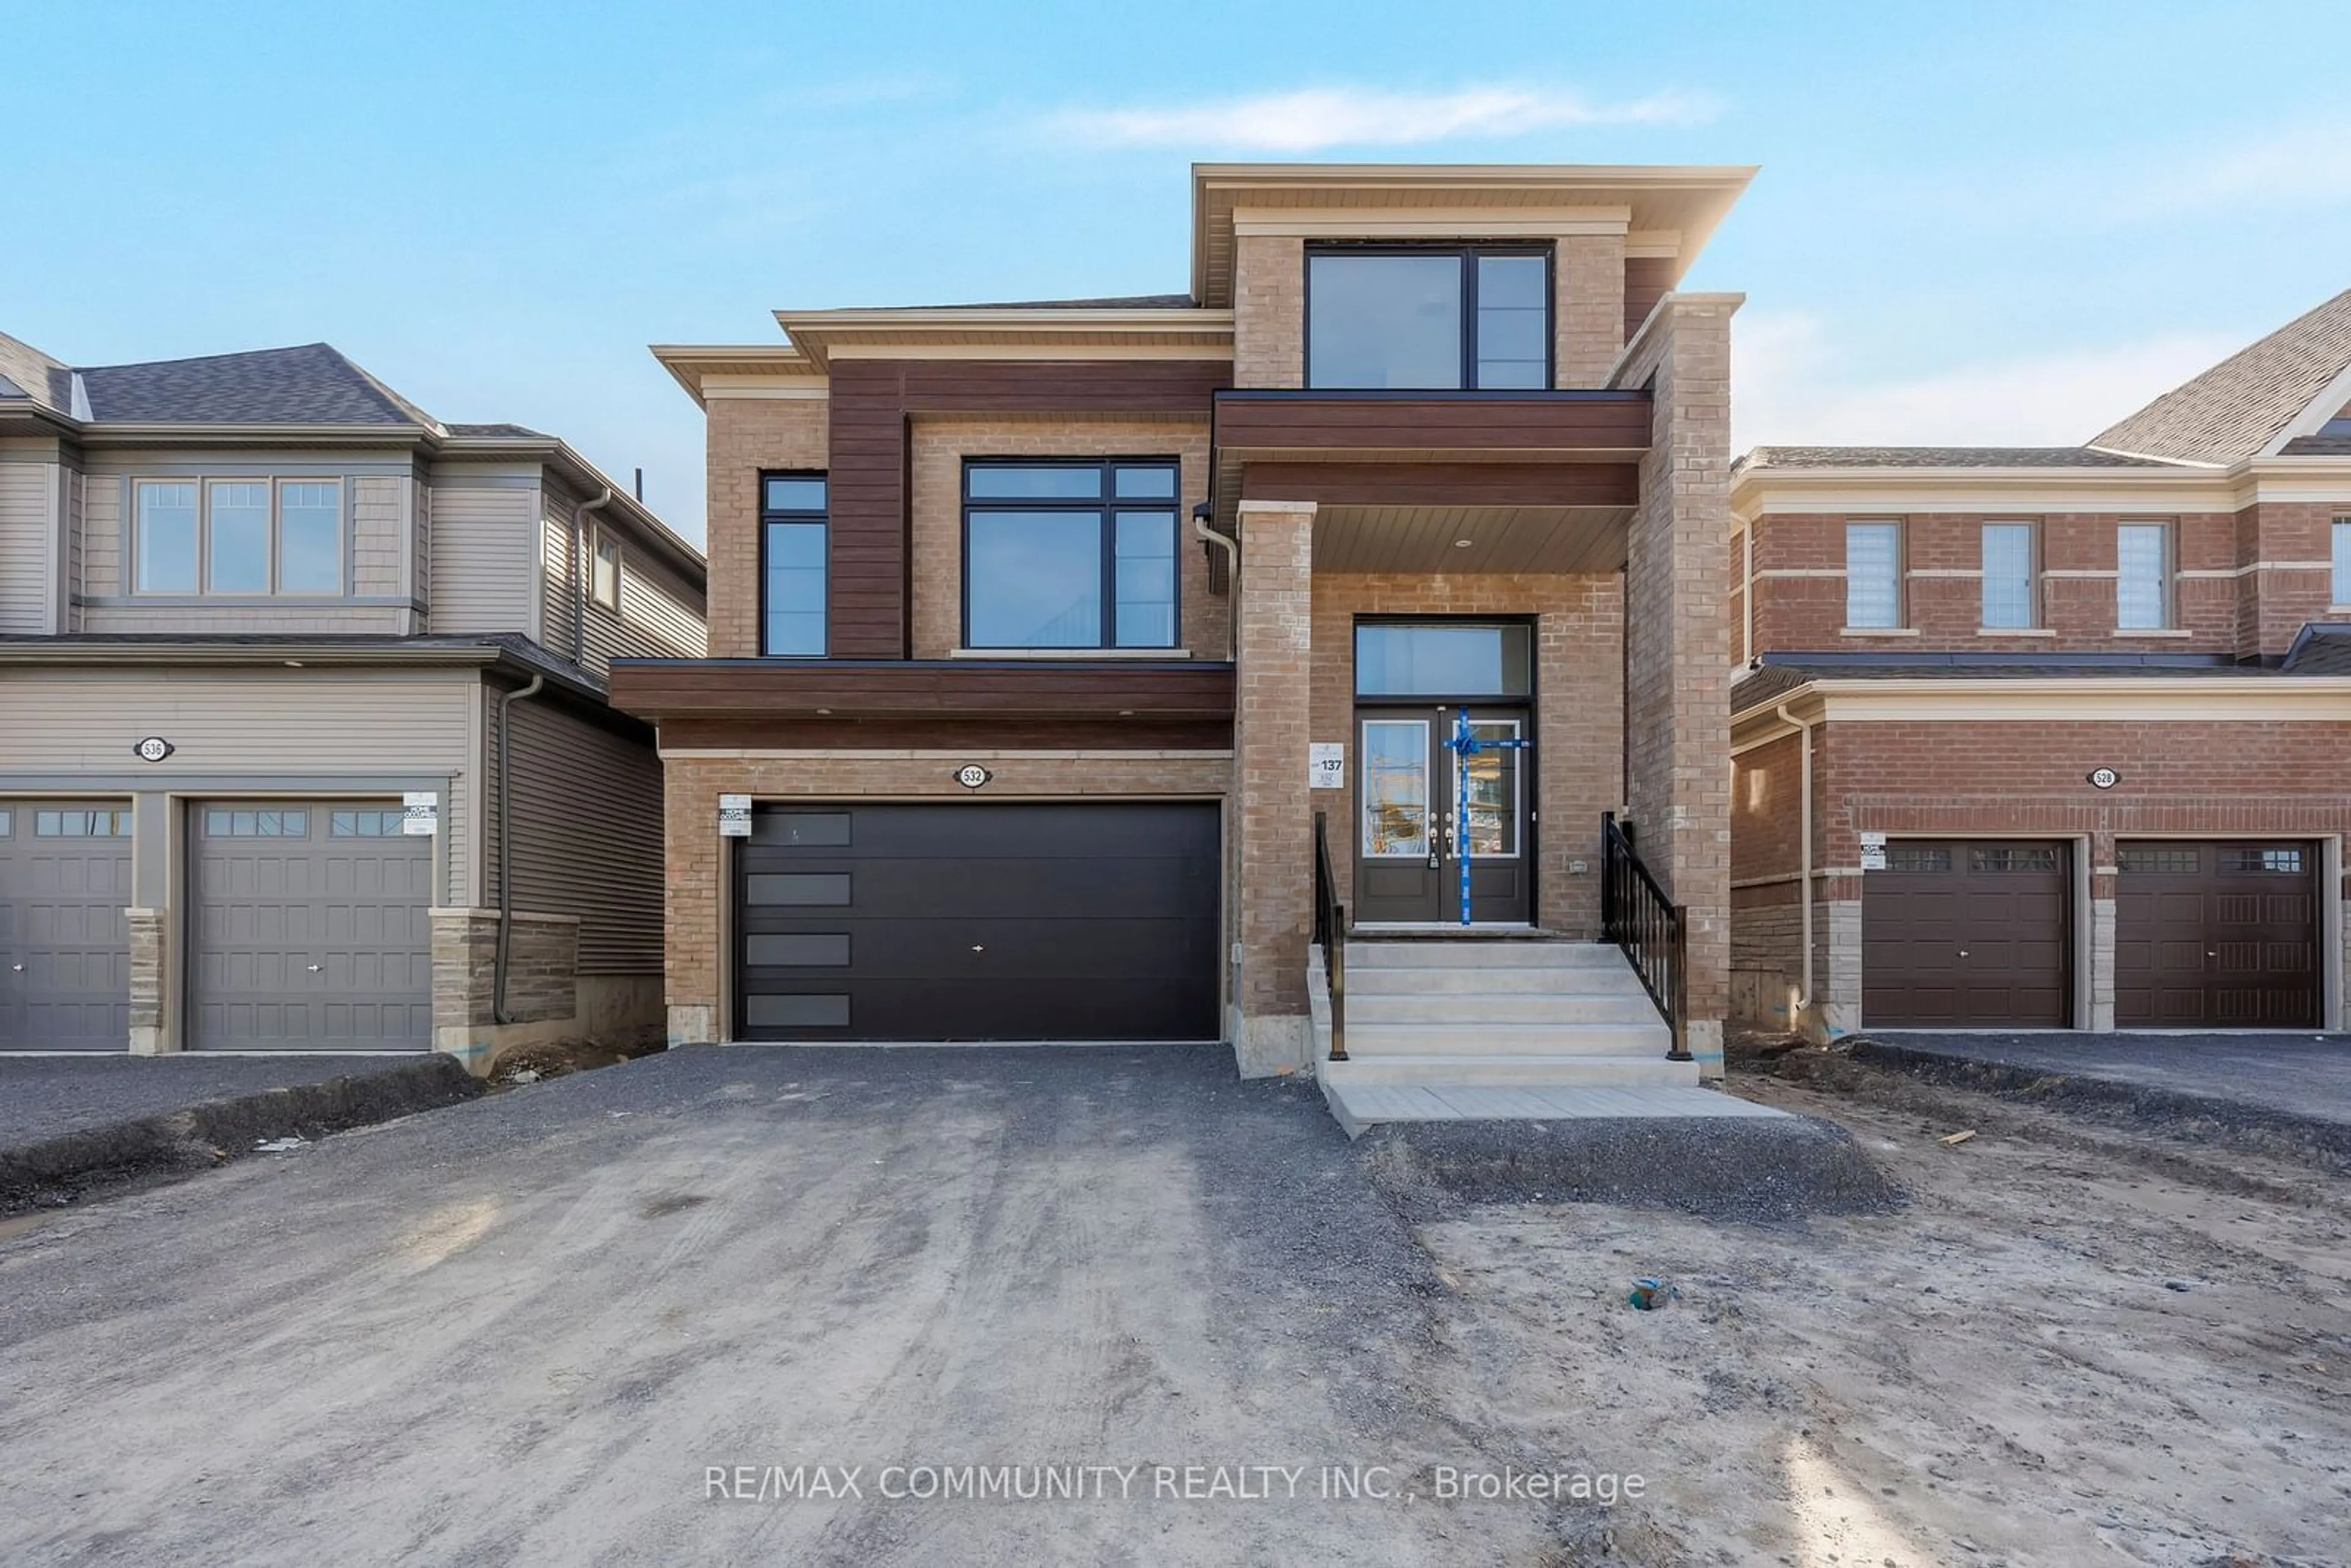 Home with brick exterior material for 532 Hornbeck St, Cobourg Ontario K9A 4A1